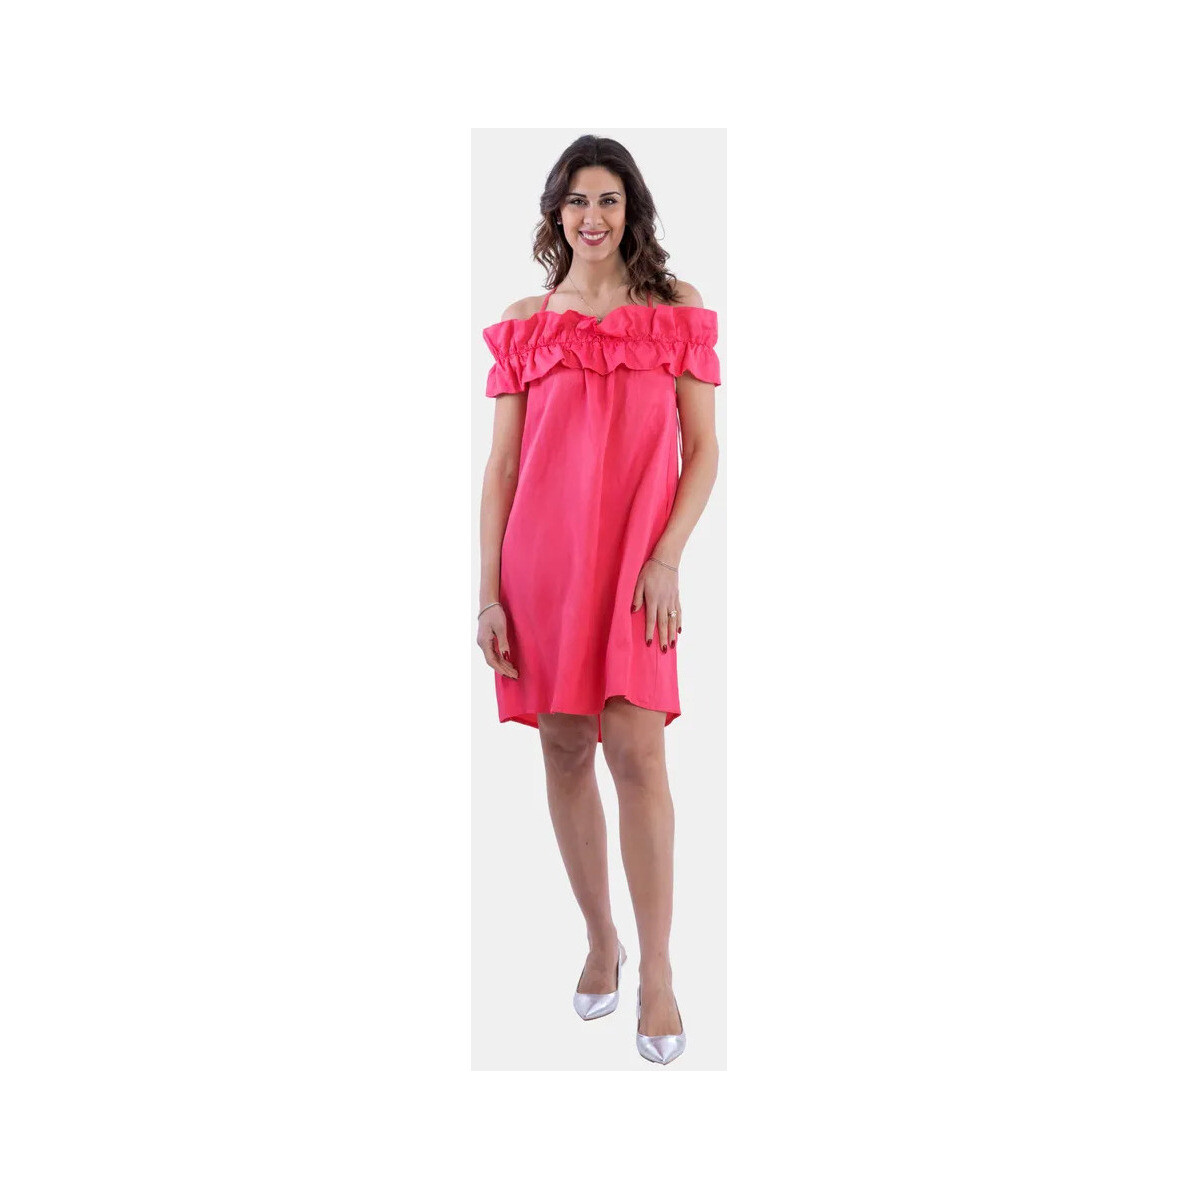 Textil Ženy Šaty Fracomina FS24SD1015W70901 Coral